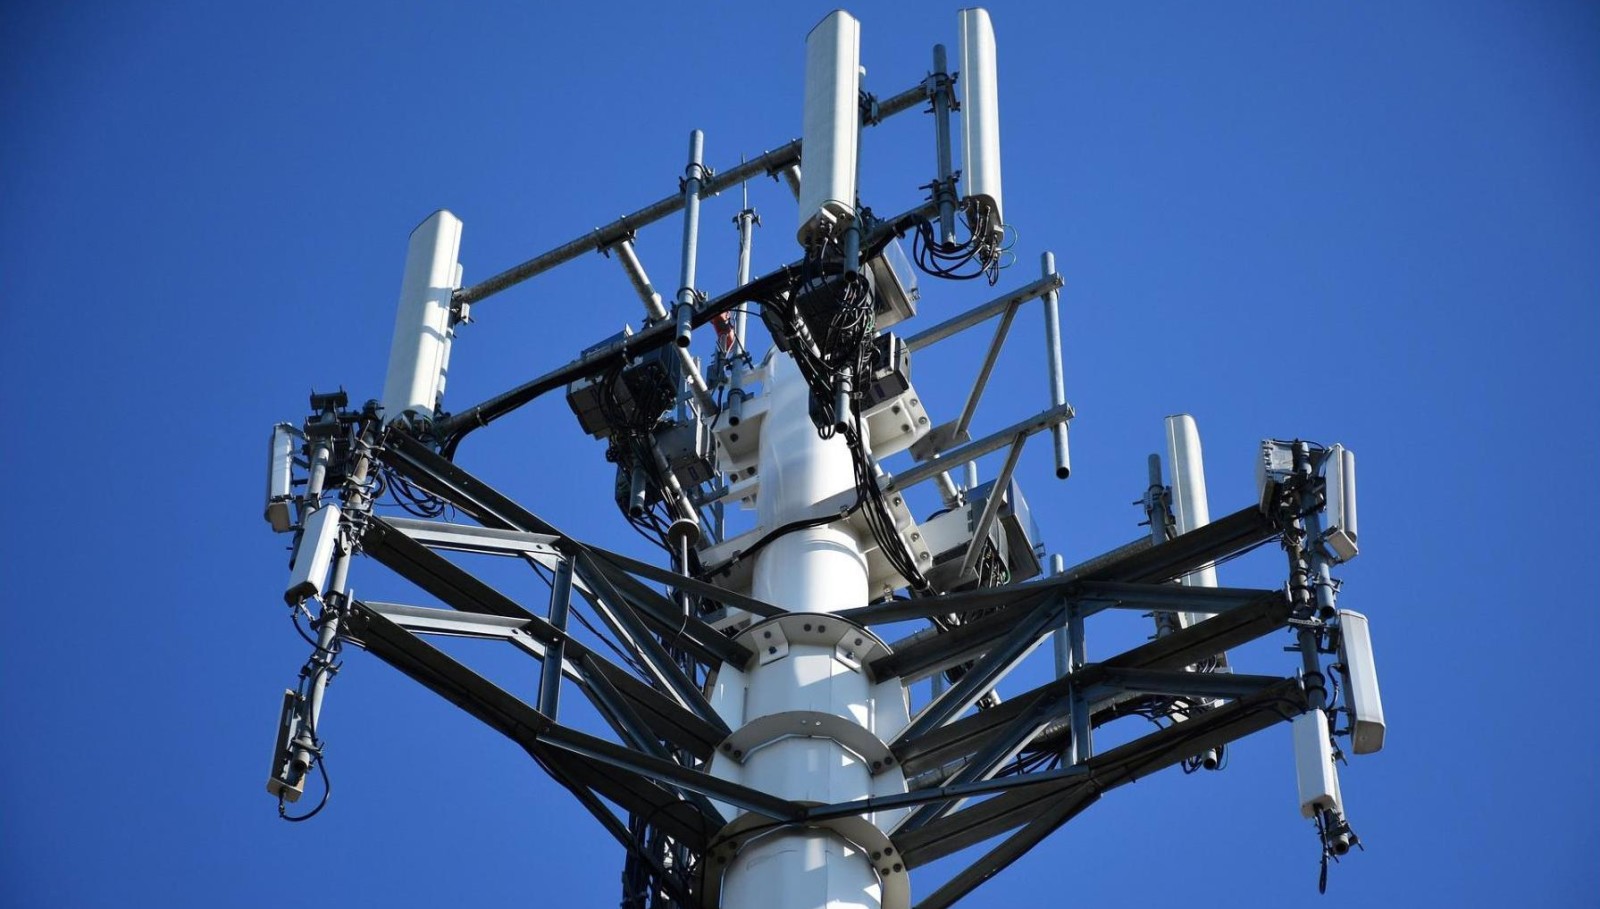 Прокуратура предупредила телекоммуникационную компанию о недопустимости строительства вышки сотовой связи на выбранном участке в Хаталдоне